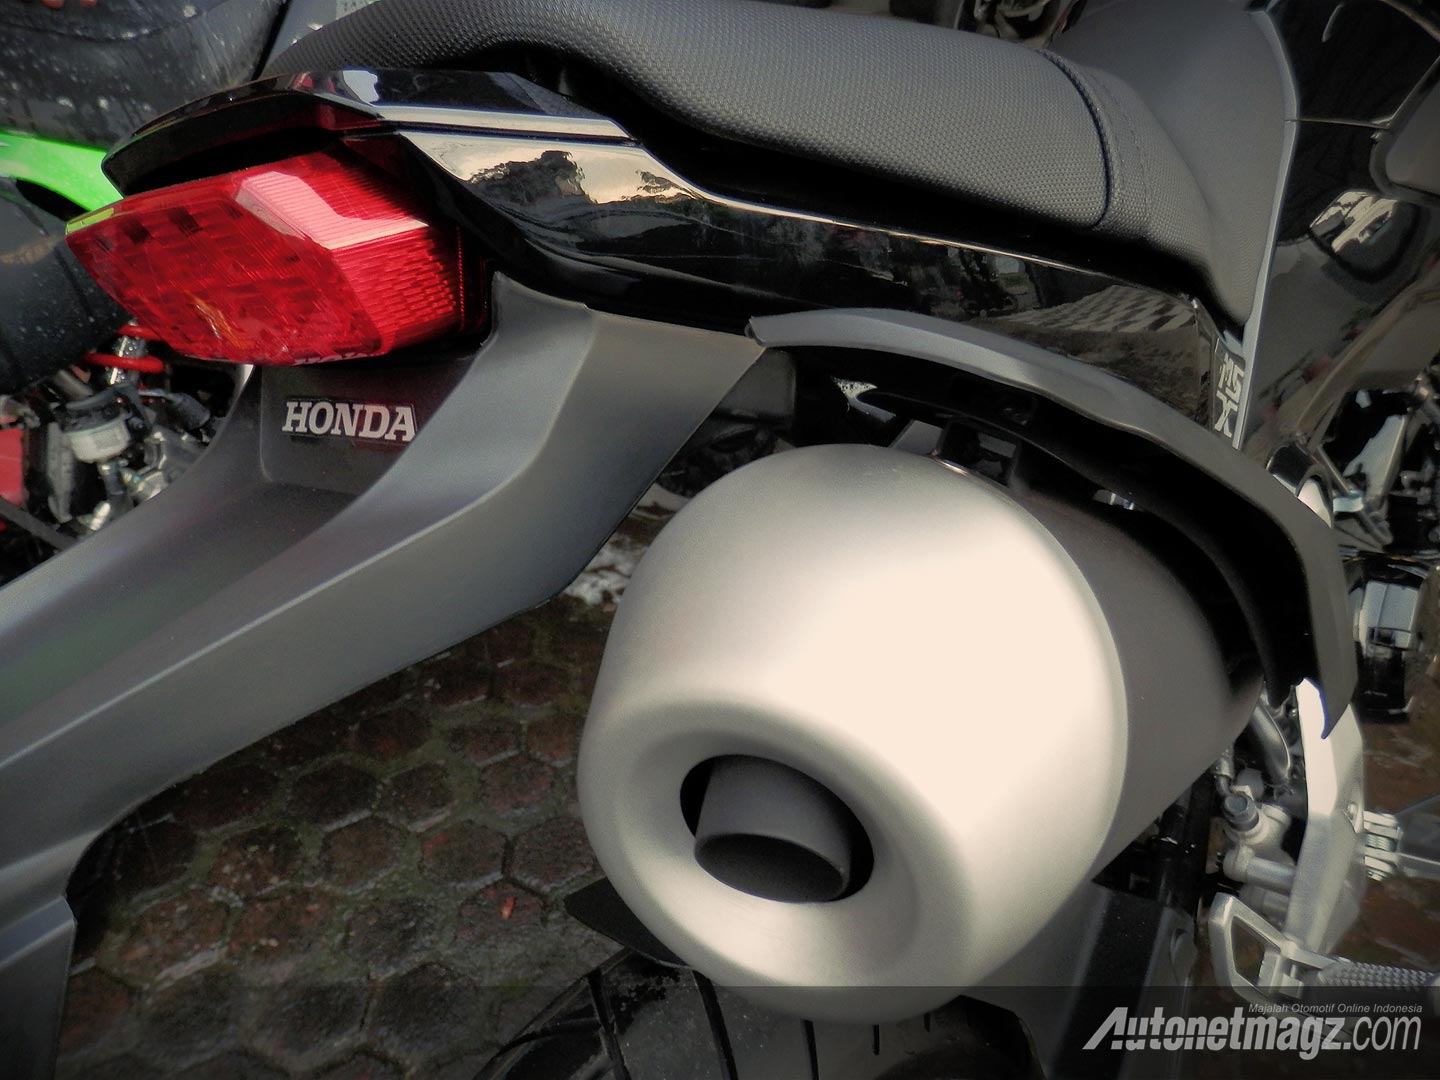 Honda, Stop lamp LED Honda MSX125 Indonesia: Honda MSX125 Si Kecil Yang Trendy Dan Bertenaga Mumpuni